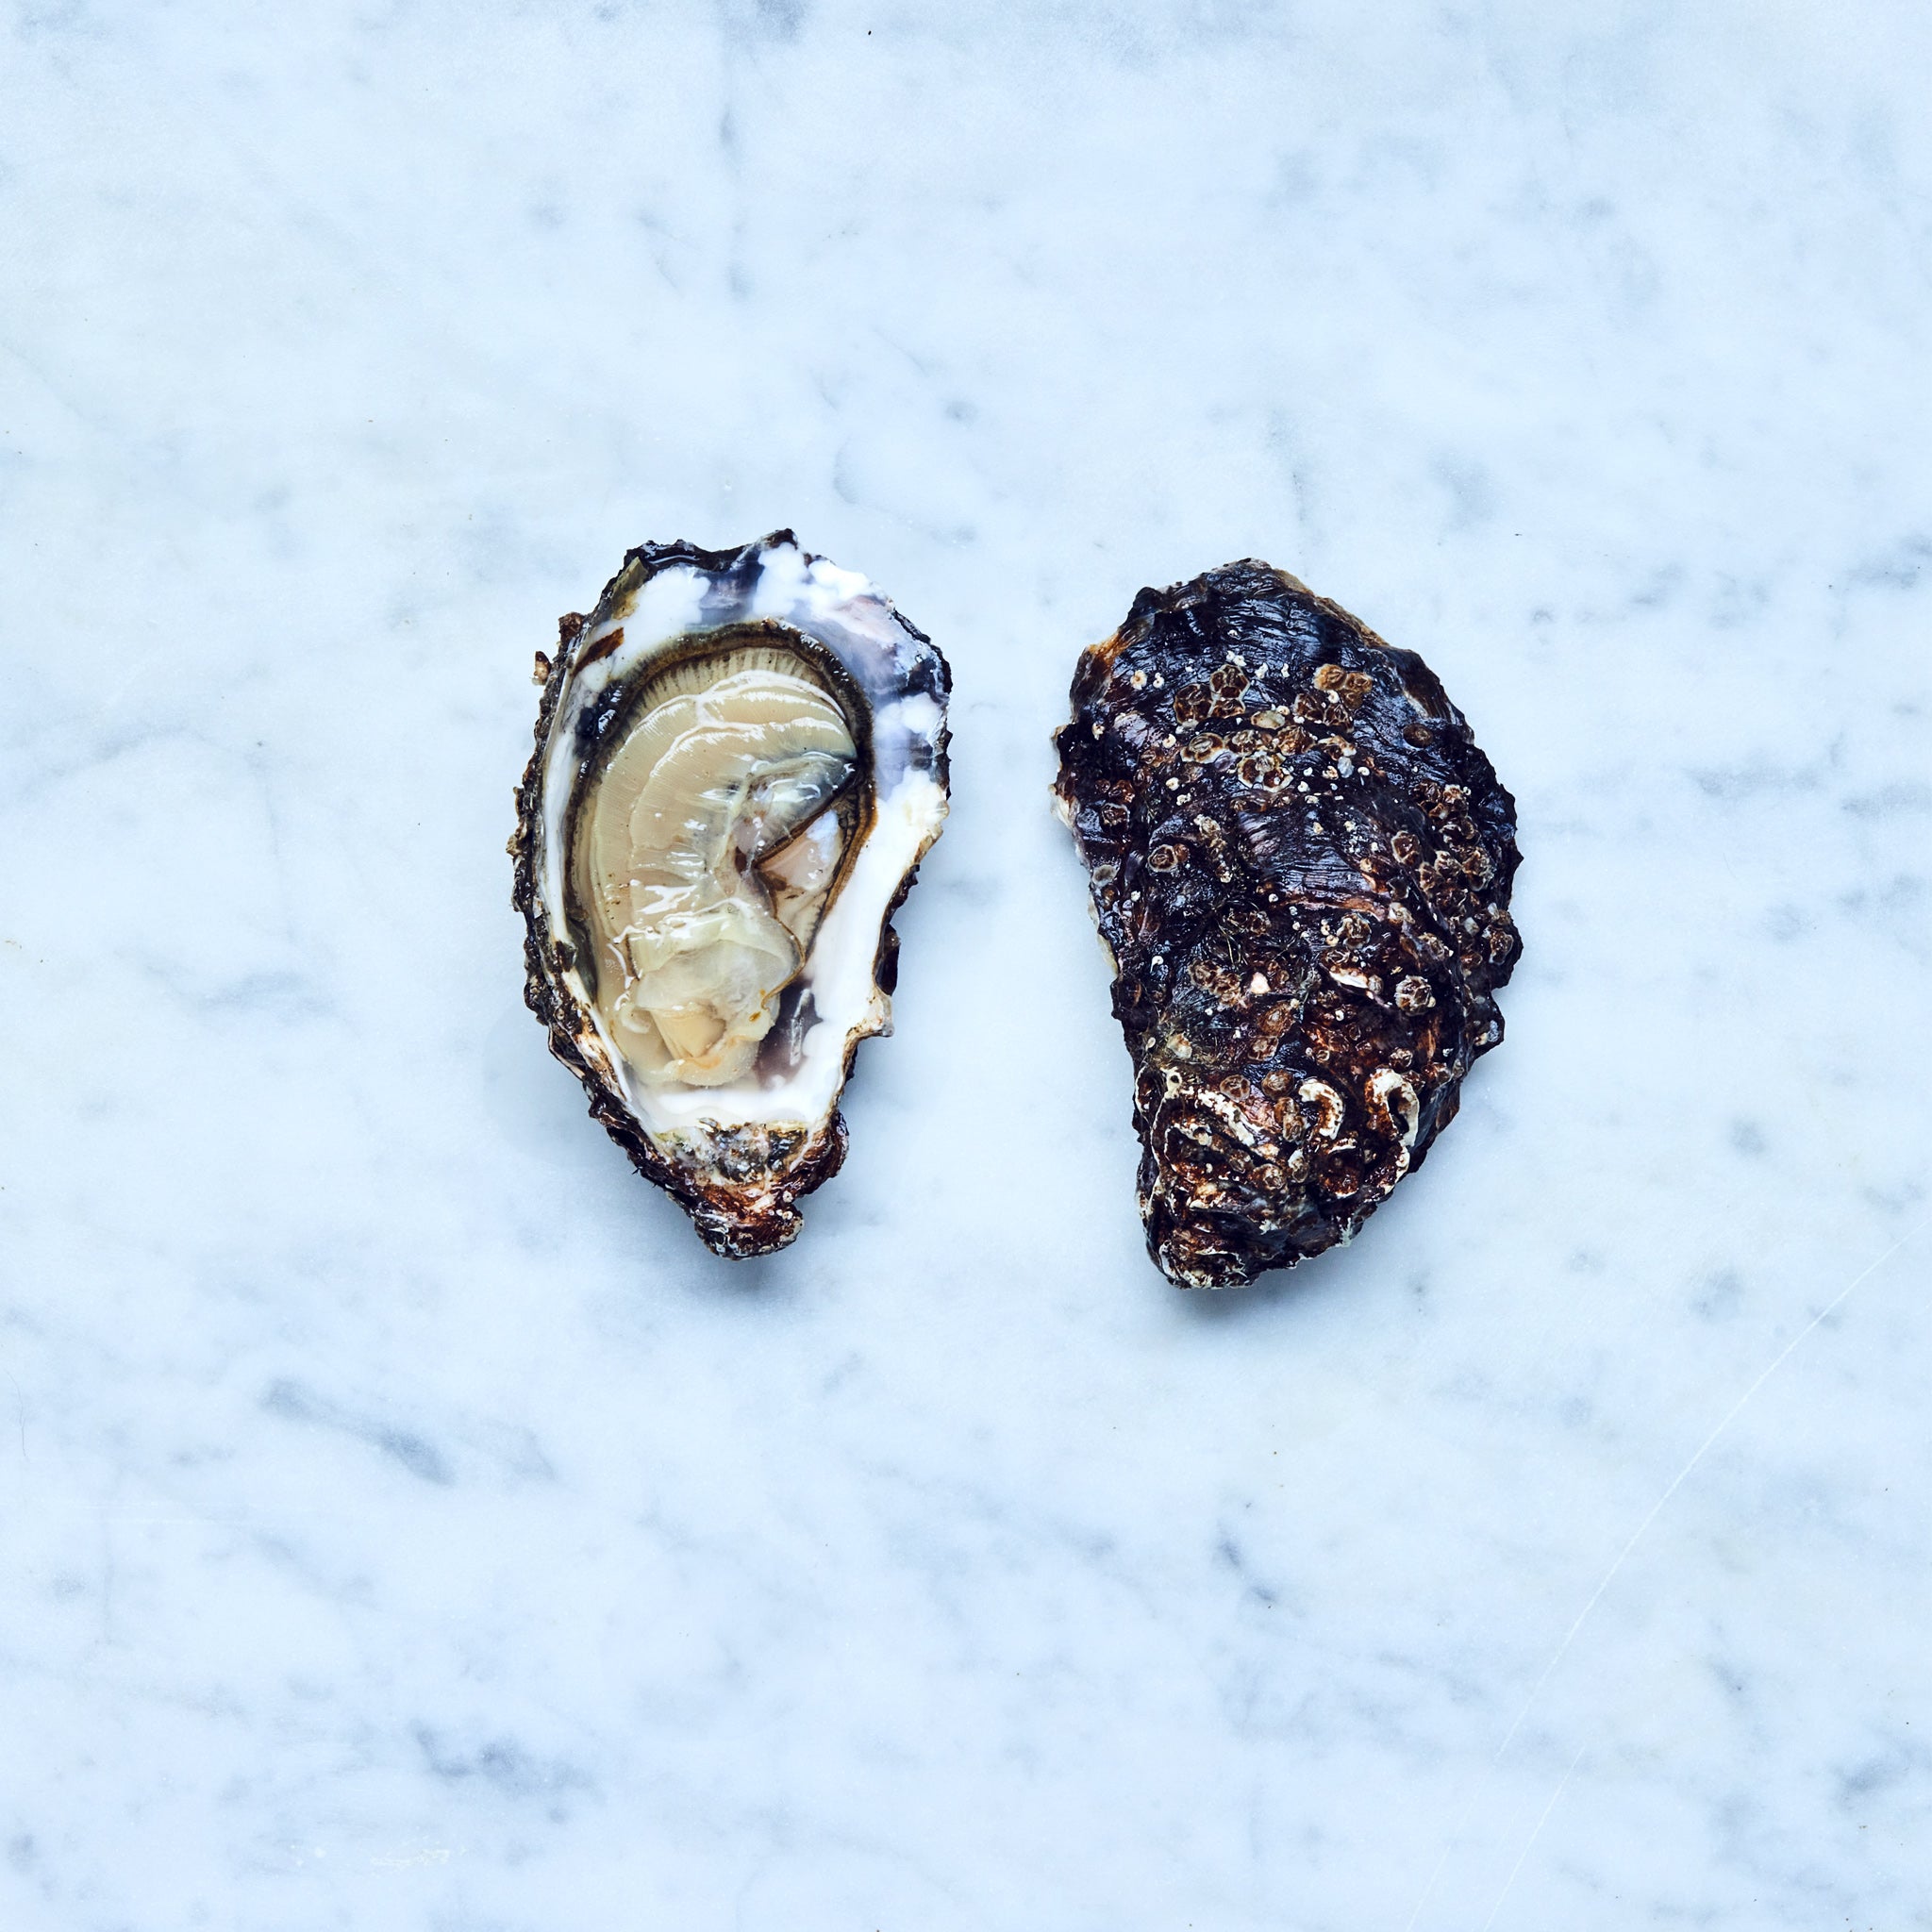 Eine geöffnete frische Sylter Royal Auster auf einer Marmoroberfläche.